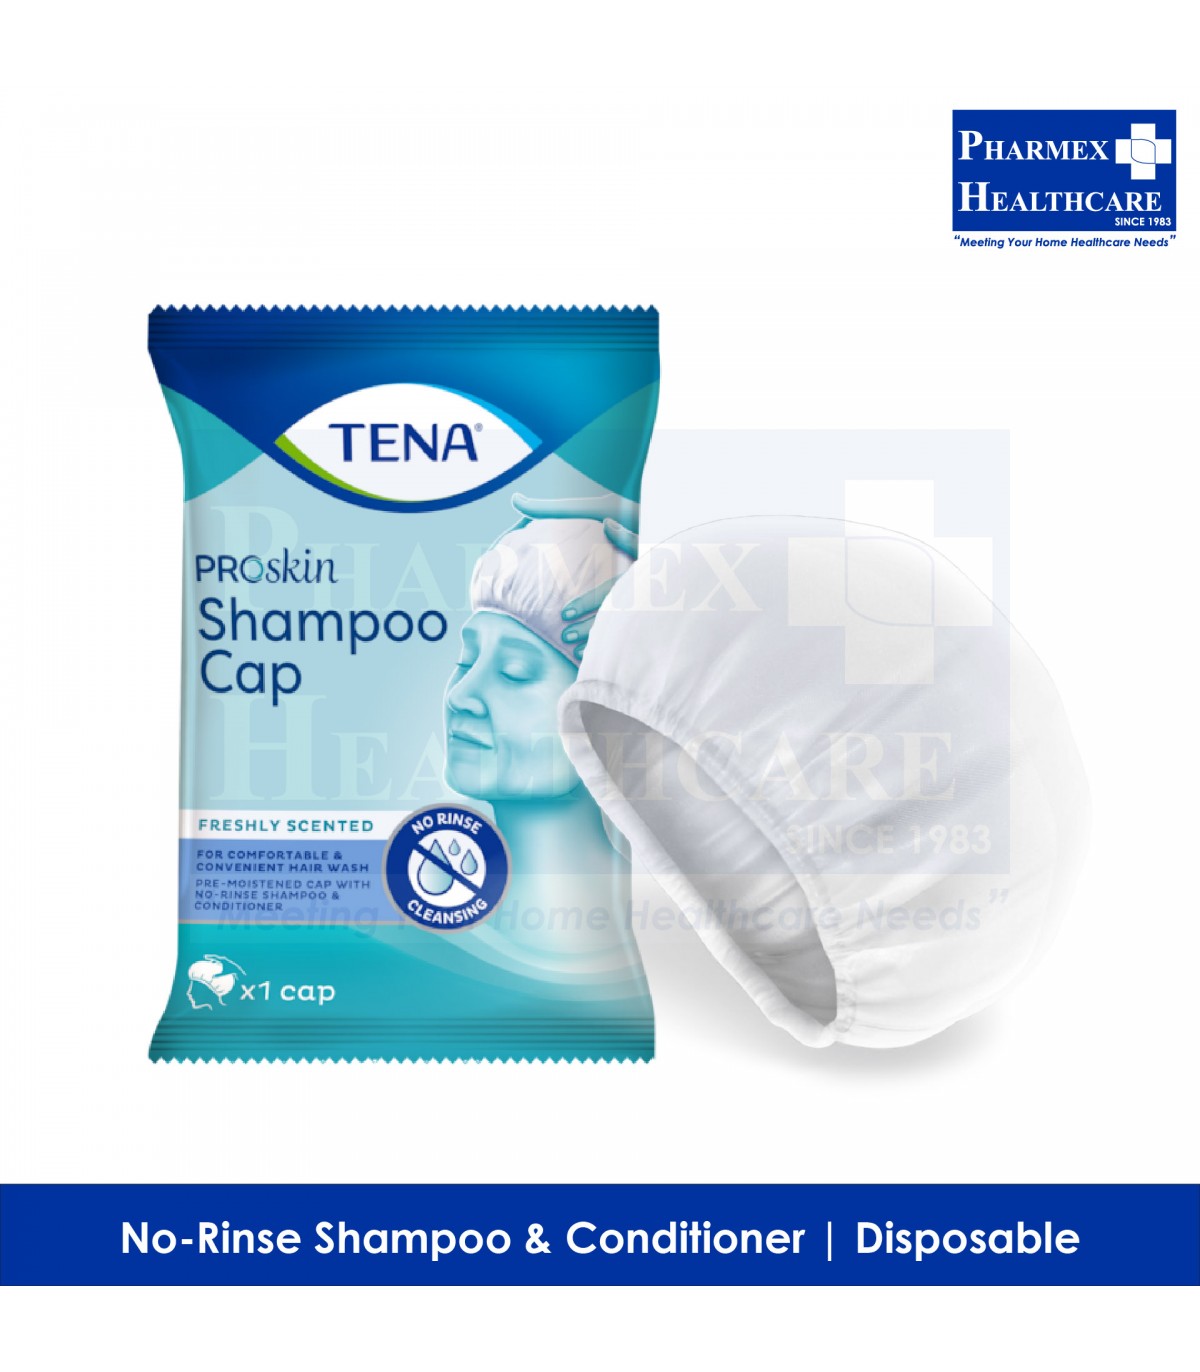 TENA Shampoo Cap Pharmex Healthcare